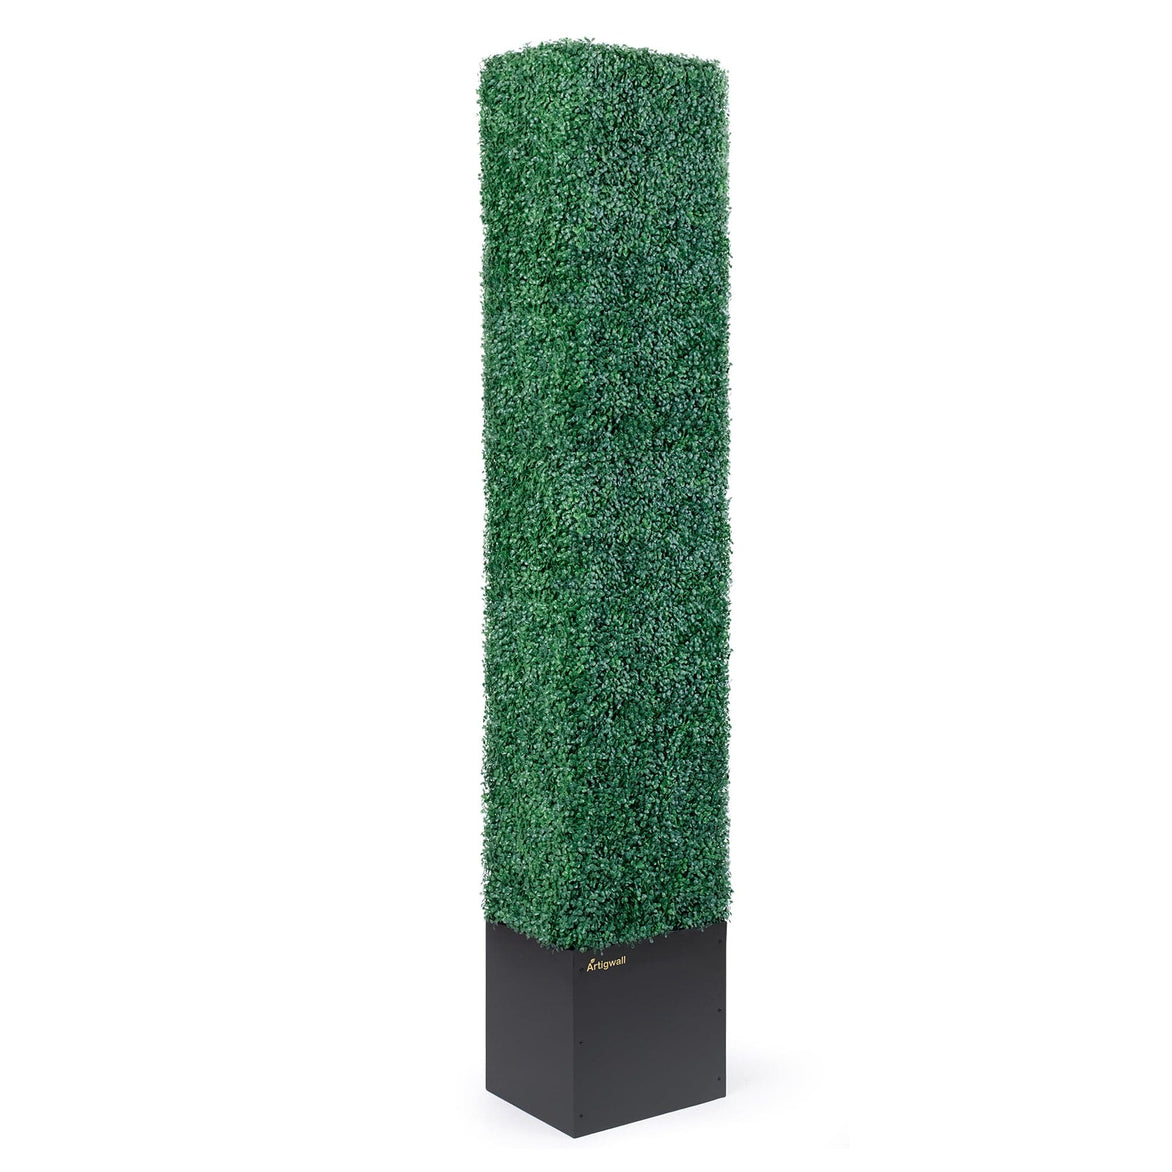 Artigwall® Boxwood Topiary Tree